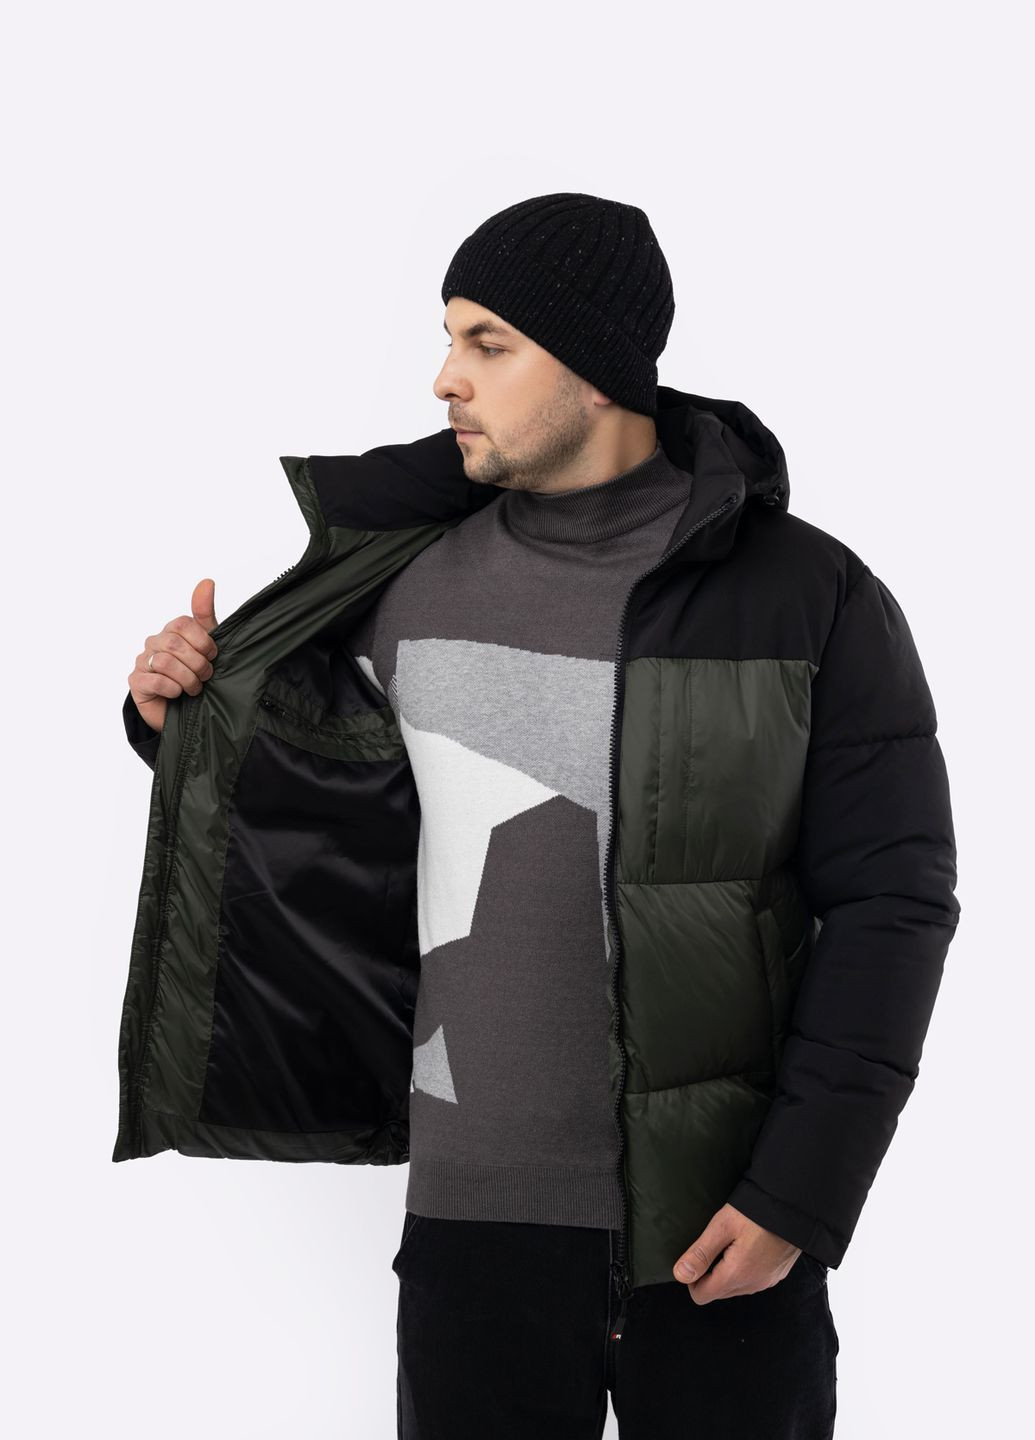 Оливковая (хаки) зимняя мужская куртка цвет хаки цб-00220284 Remain